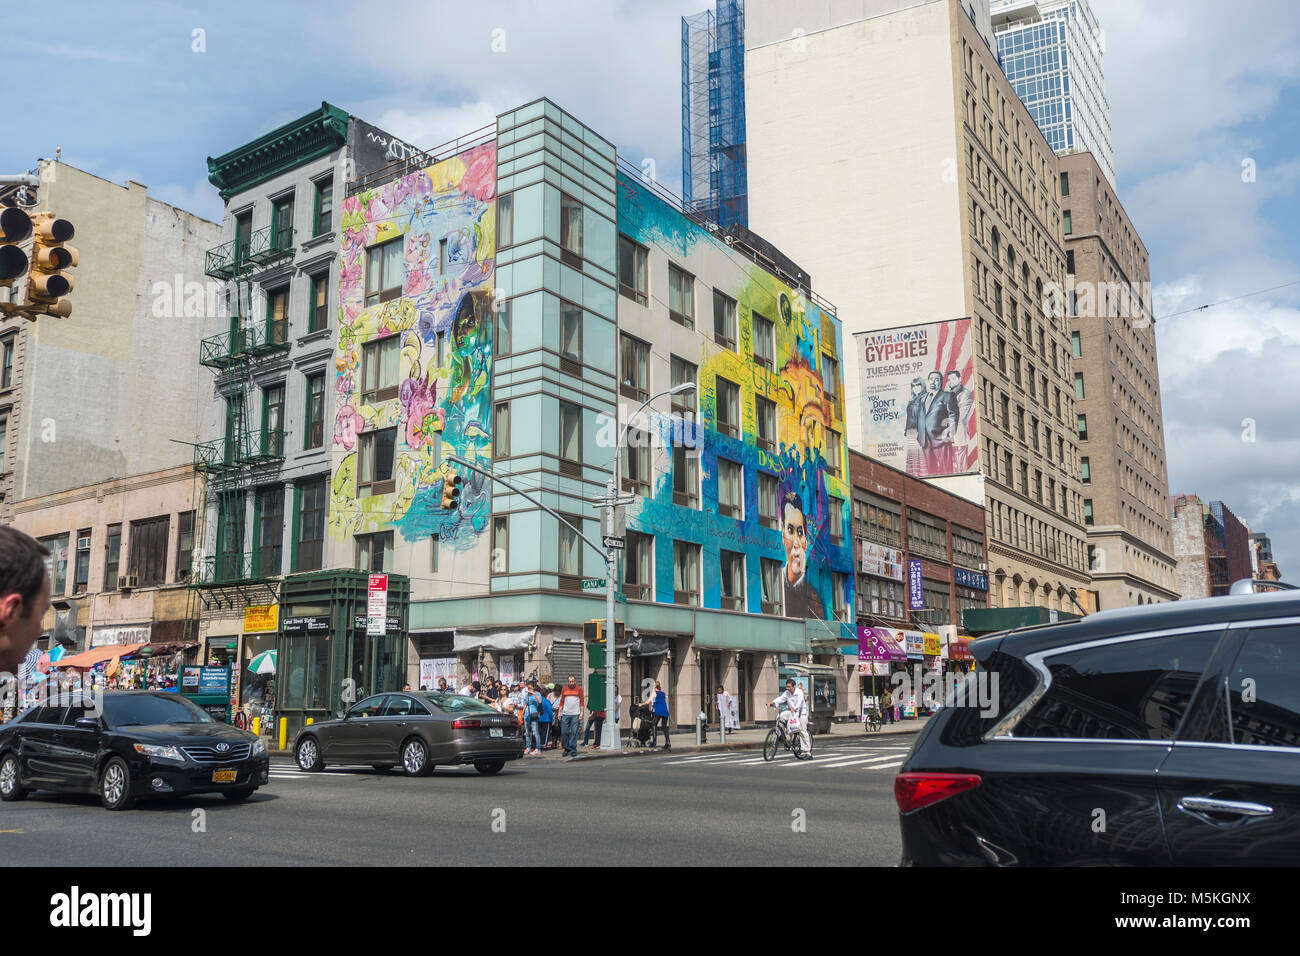 Nueva York, NY, ESTADOS UNIDOS, 29 de septiembre de 2015 - Un mural en el edificio de la esquina de la Calle Canal y Lafayette. ©Stacy Walsh Rosenstock Foto de stock